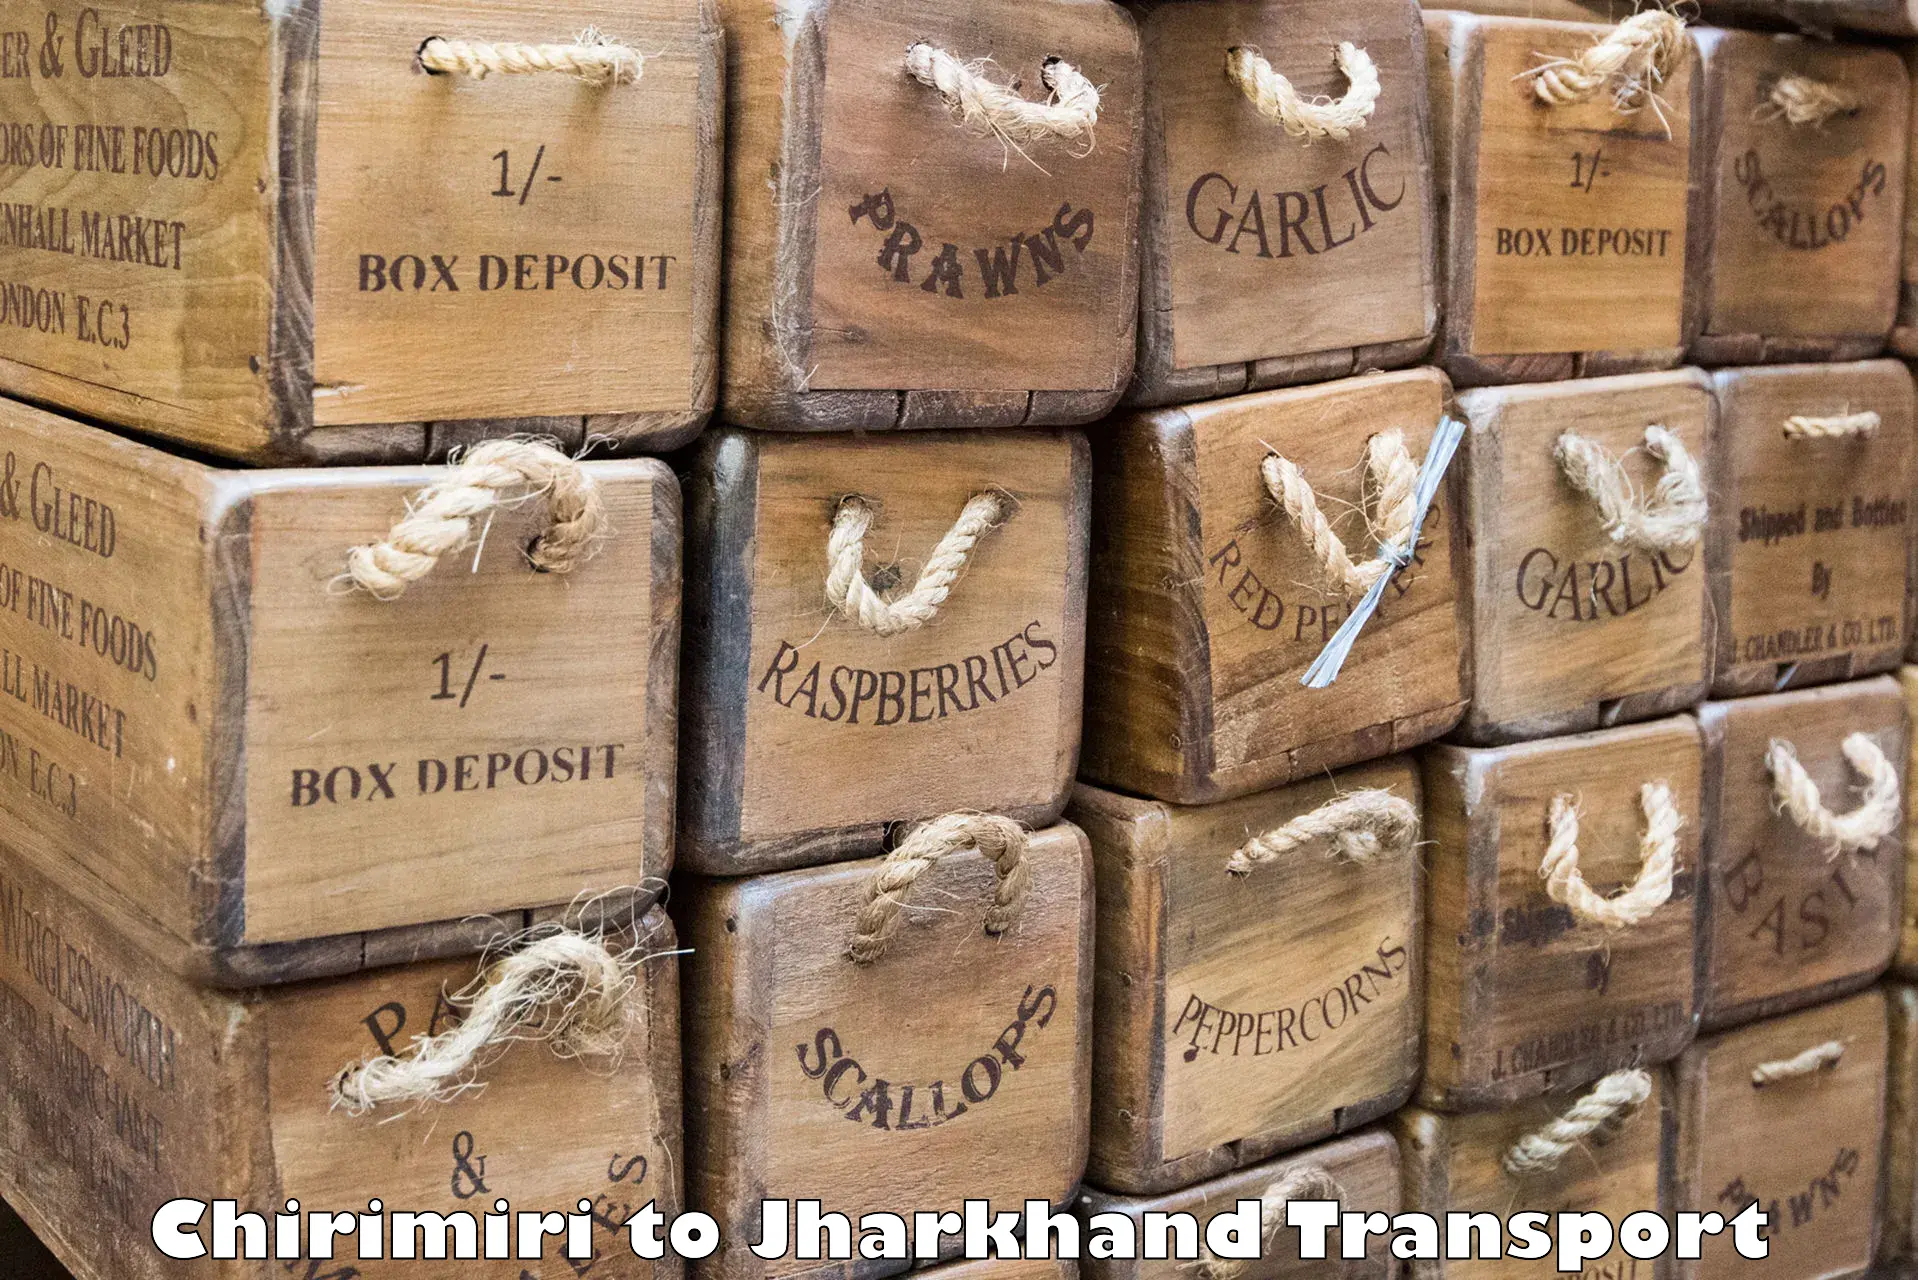 Vehicle transport services Chirimiri to Barwadih